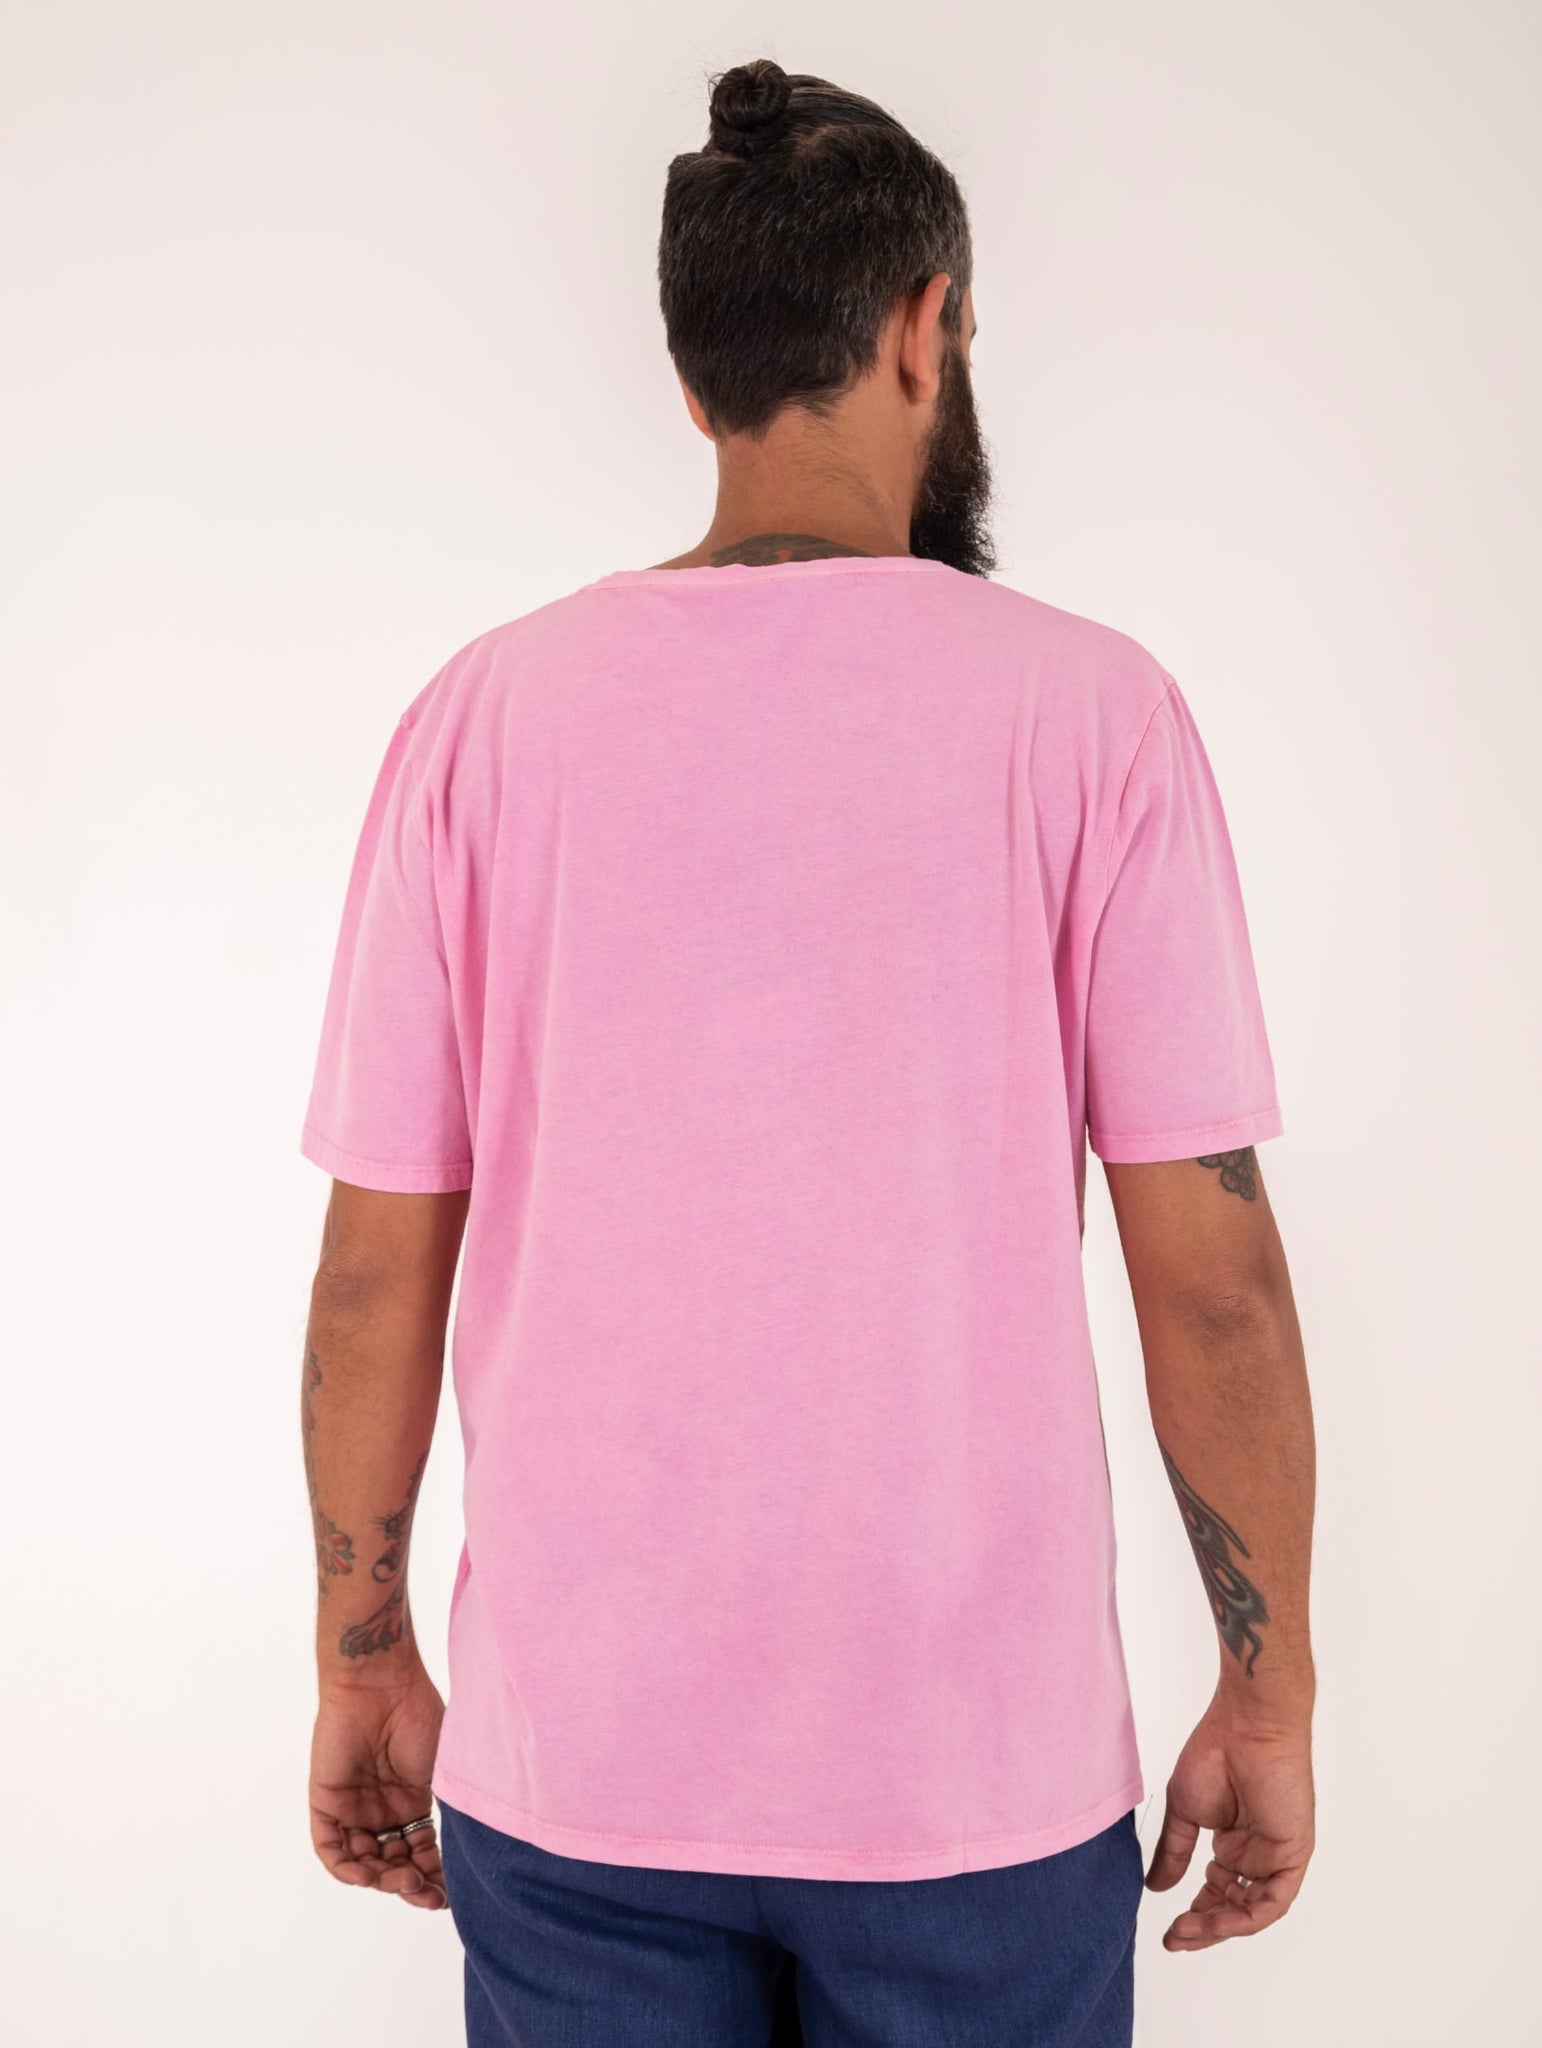 T-Shirt Arovescio in Cotone Vintage Rosa